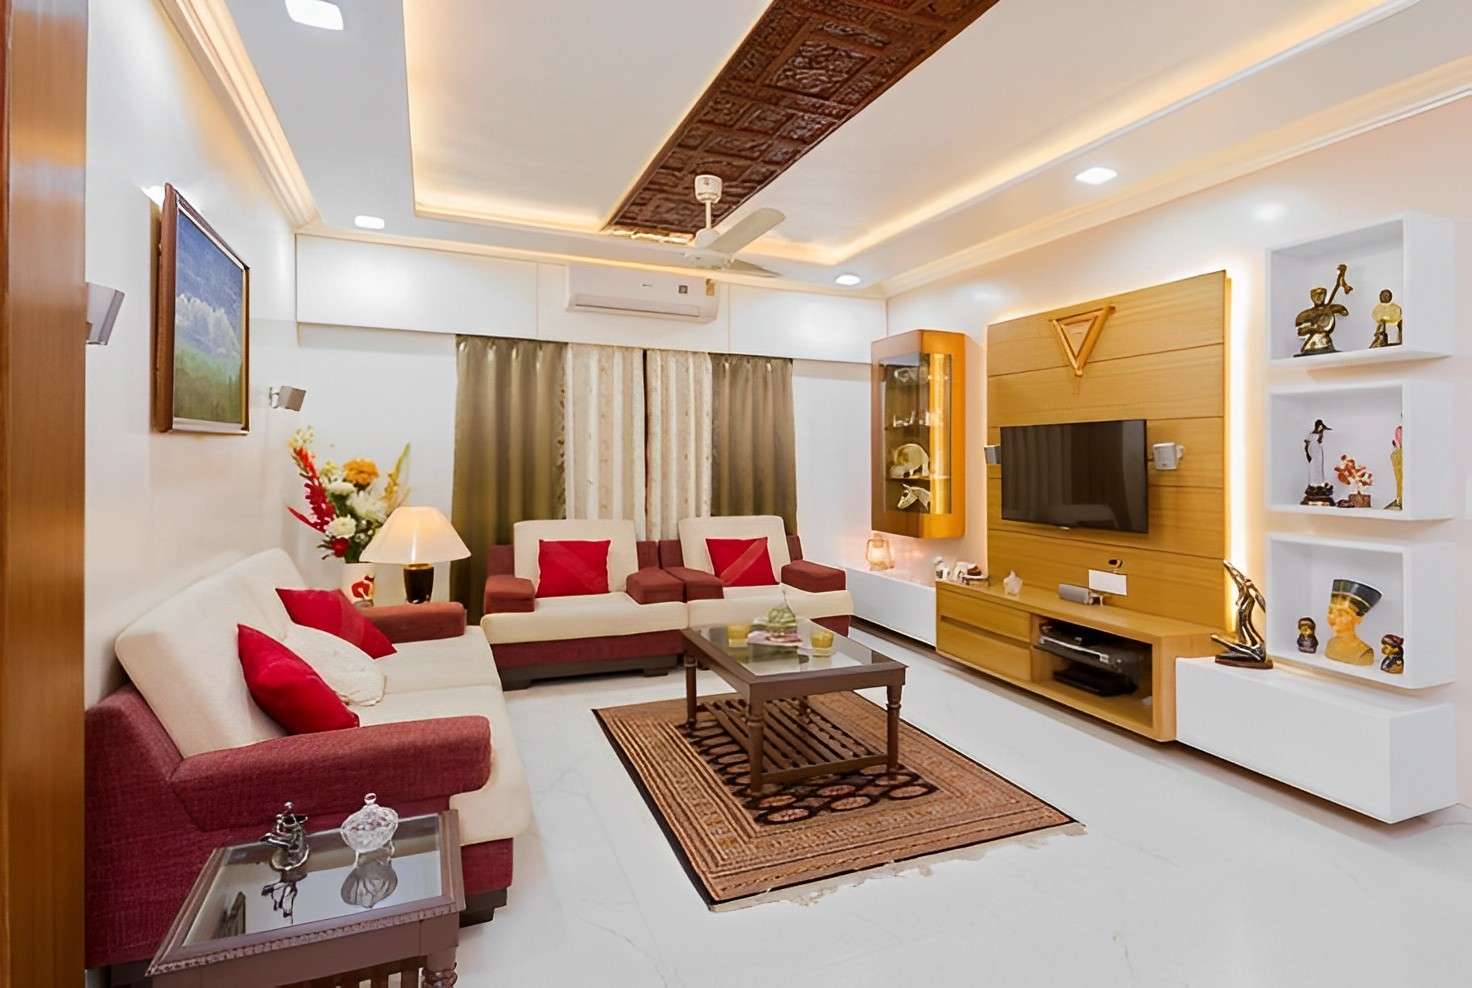 #1 Best interior designer in Hyderabad [Budget friendly]